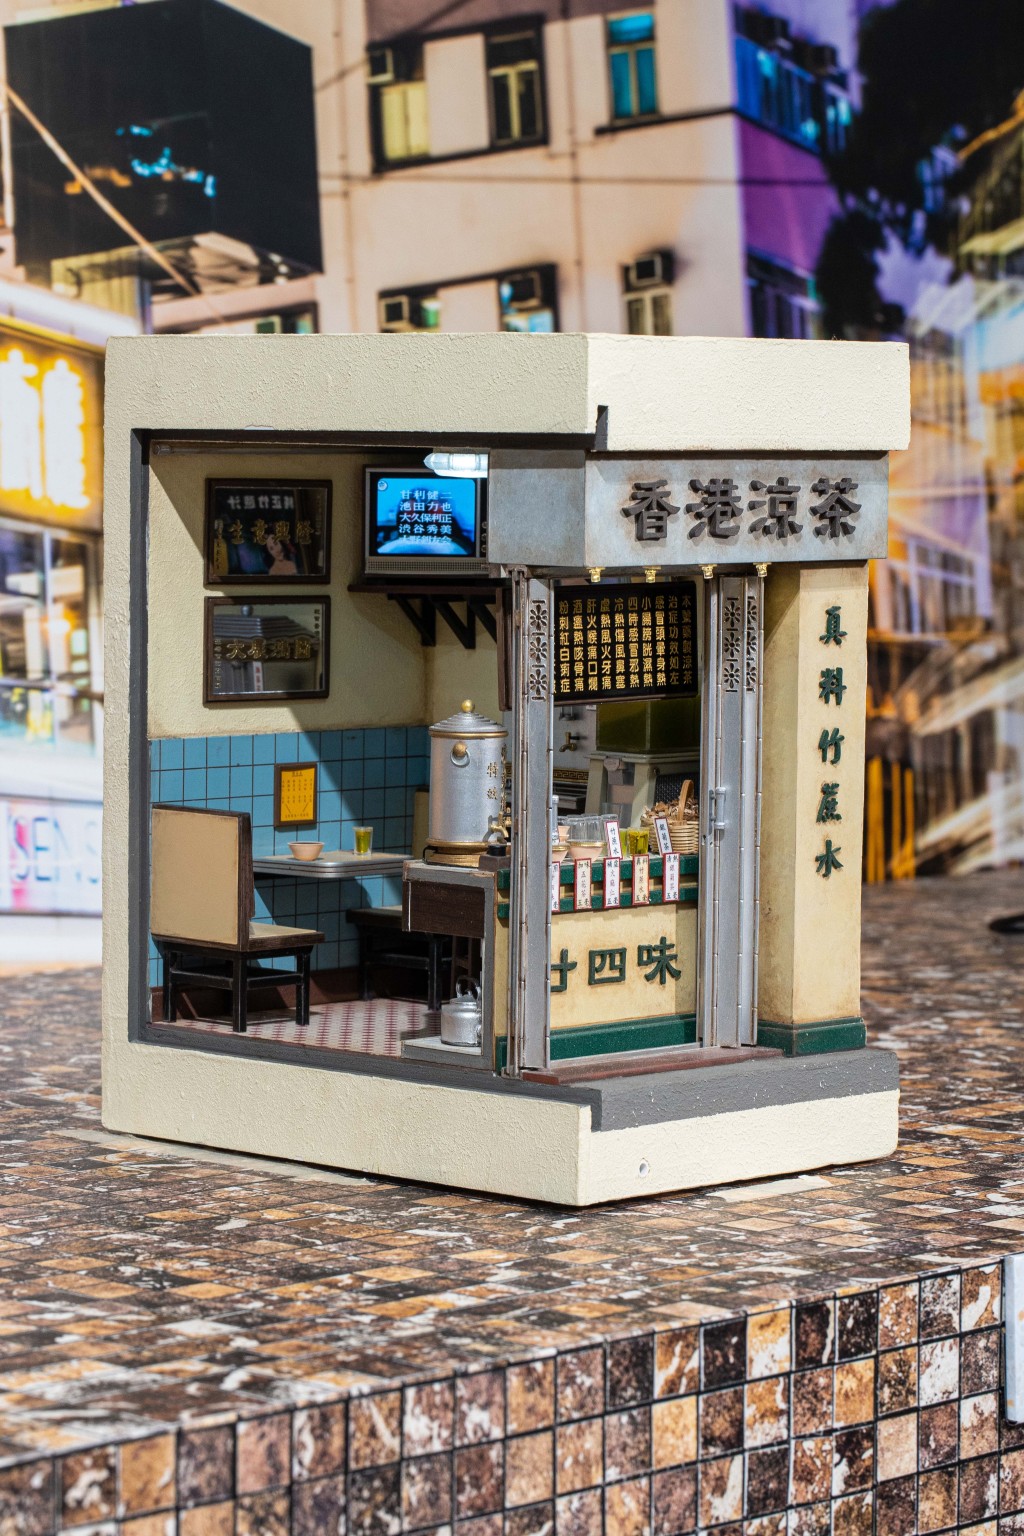 時代變遷，曾經遍布香港街頭巷尾的傳統《涼茶舖》逐漸在鬧市消失。除了舖内常見的「廿四味」、「五花茶」、「銀菊茶」等涼茶，模型還盛載著已被時代淘汰的「大牛龜」電視。